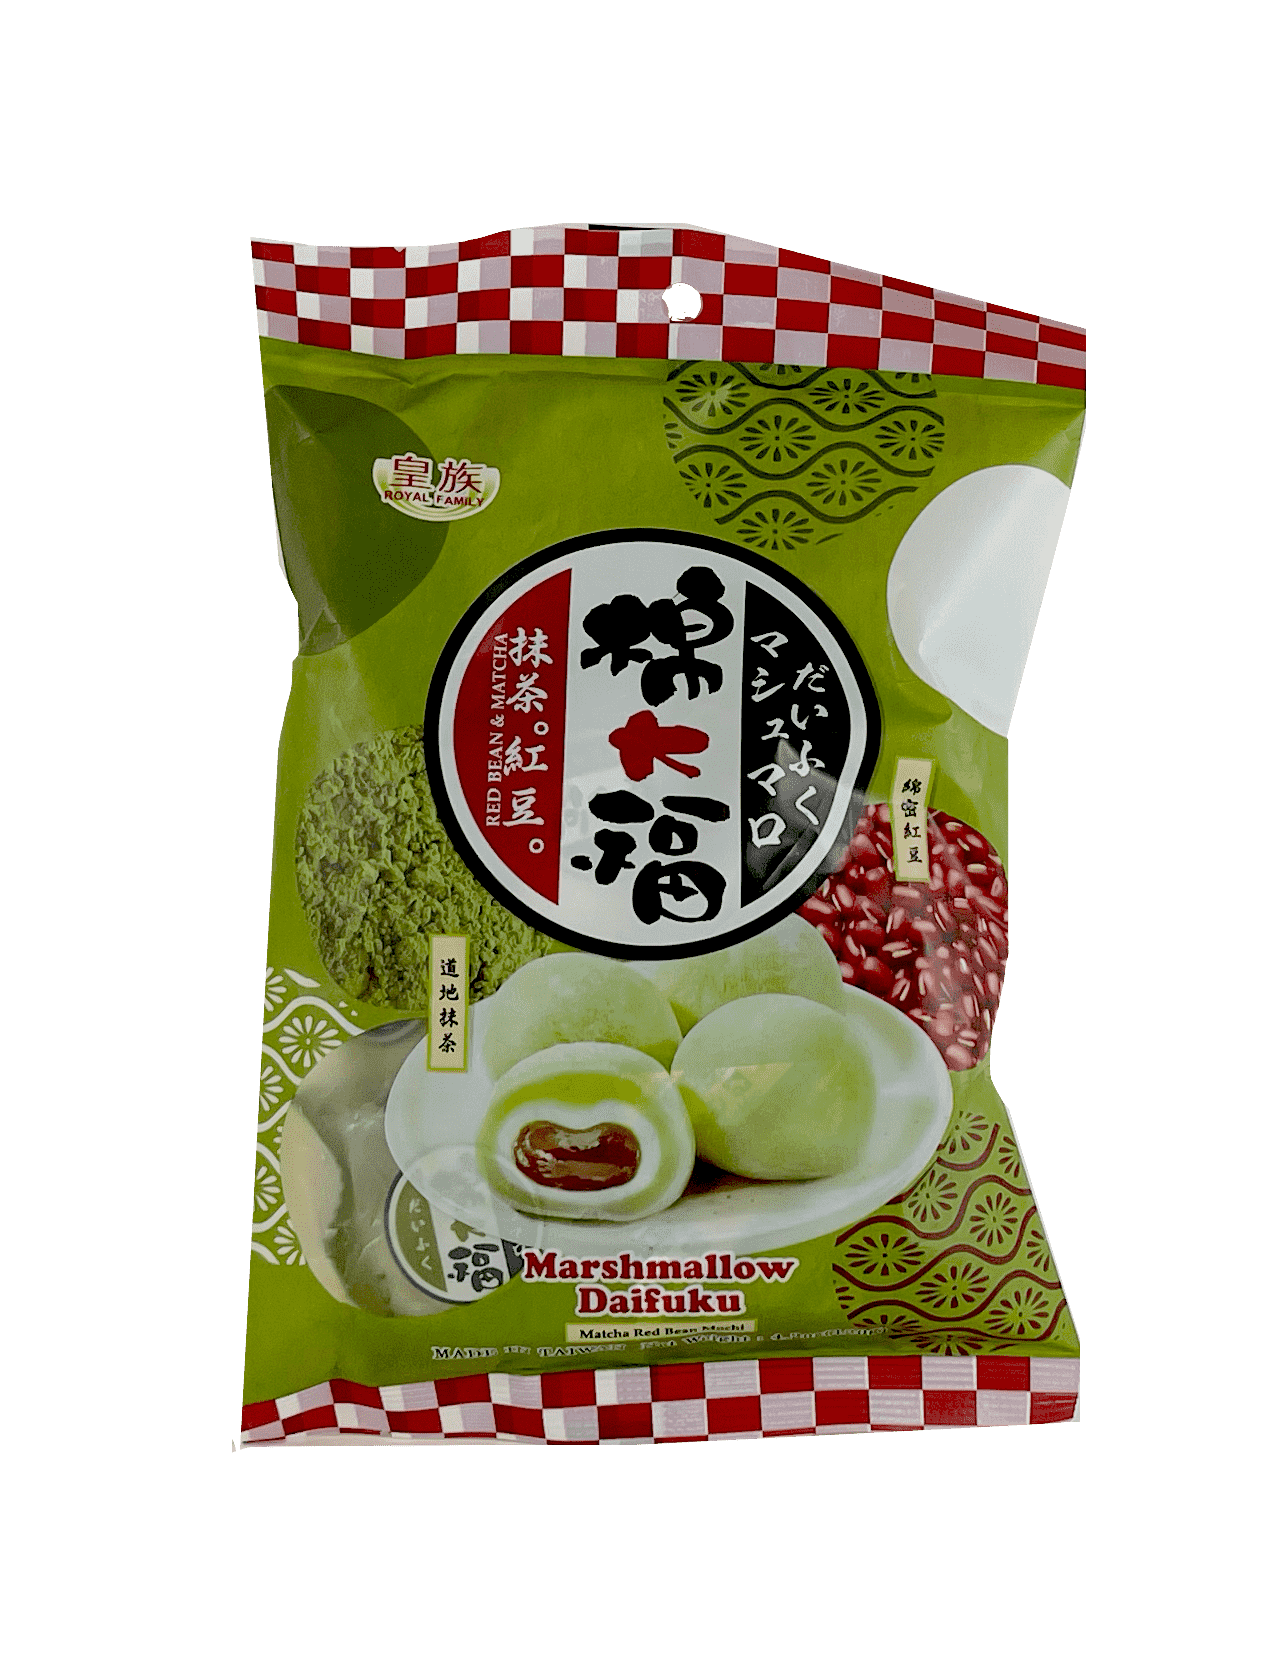 棉大福 迷你麻薯 抹茶/红豆风味 120g 皇族 台湾